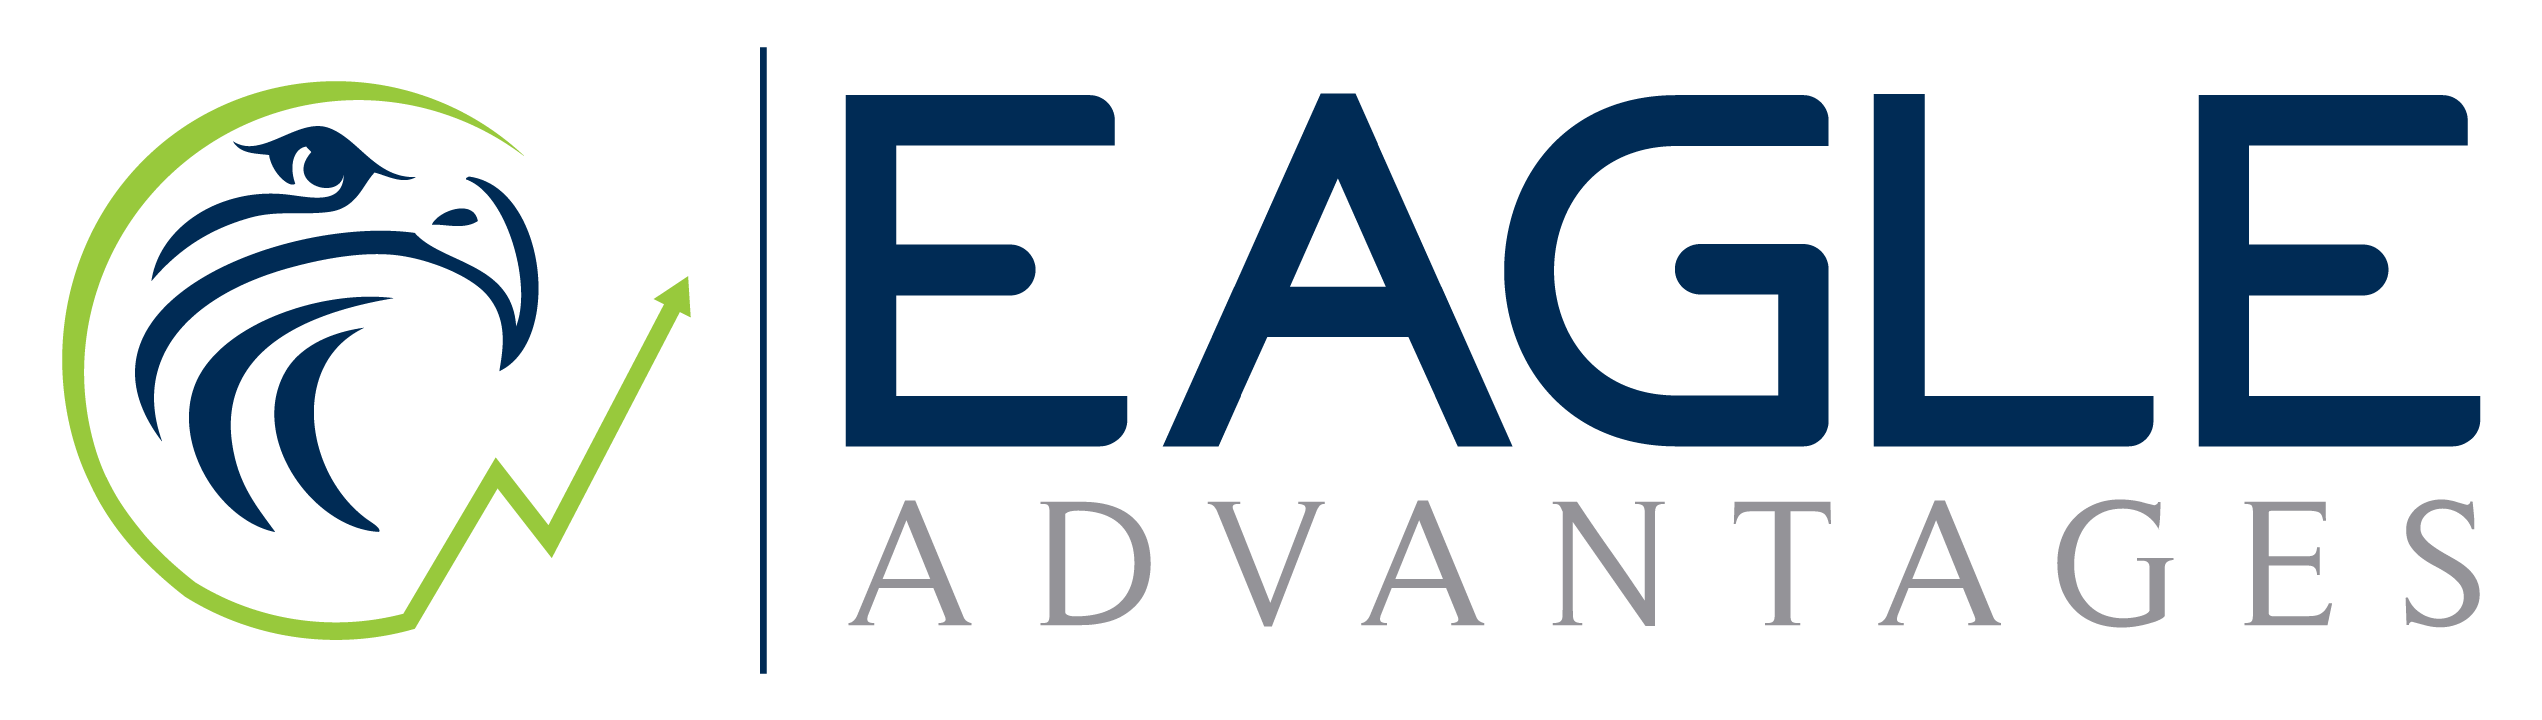 EagleAdvantages Logo